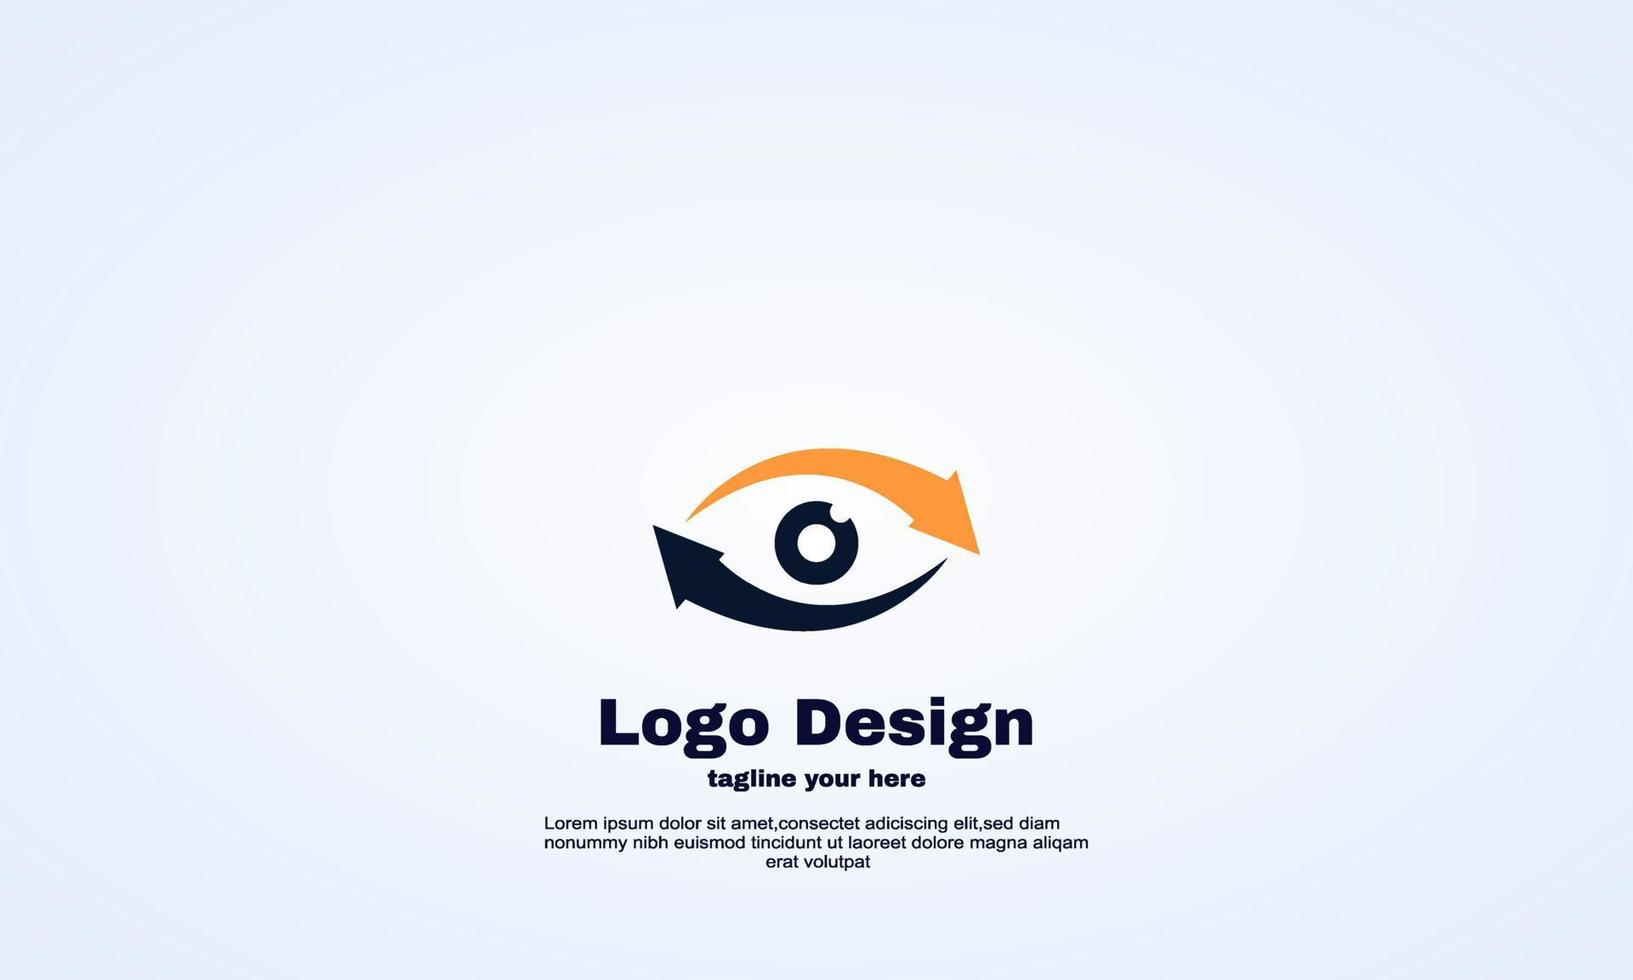 vettore dell'elemento di progettazione del logo dell'icona della freccia e dell'occhio dell'illustratore